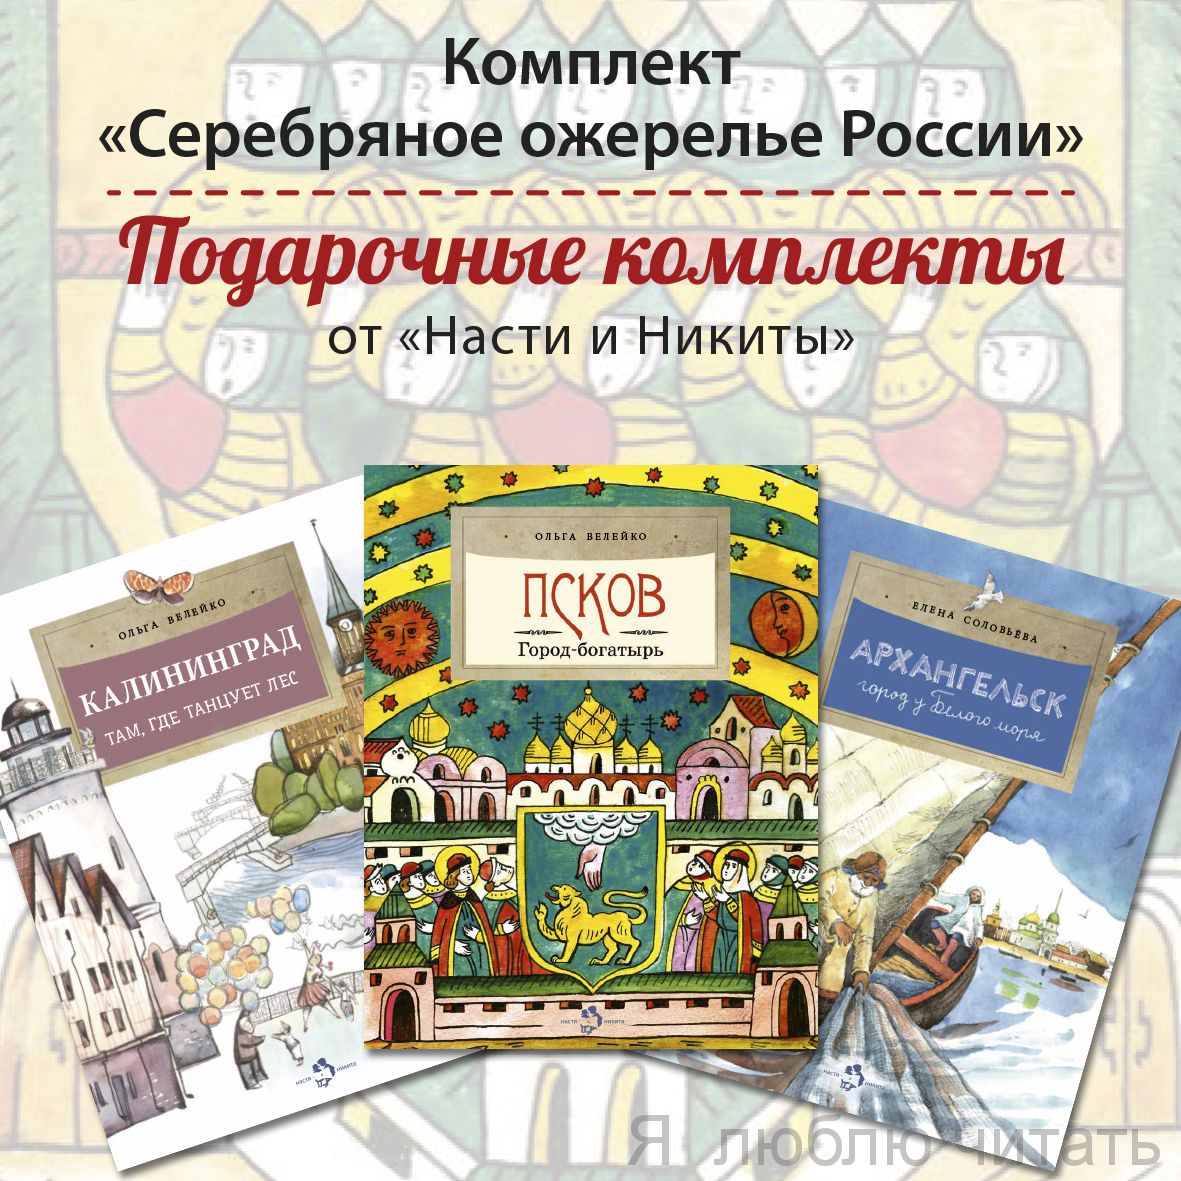 Книжный комплект «Серебряное ожерелье России»